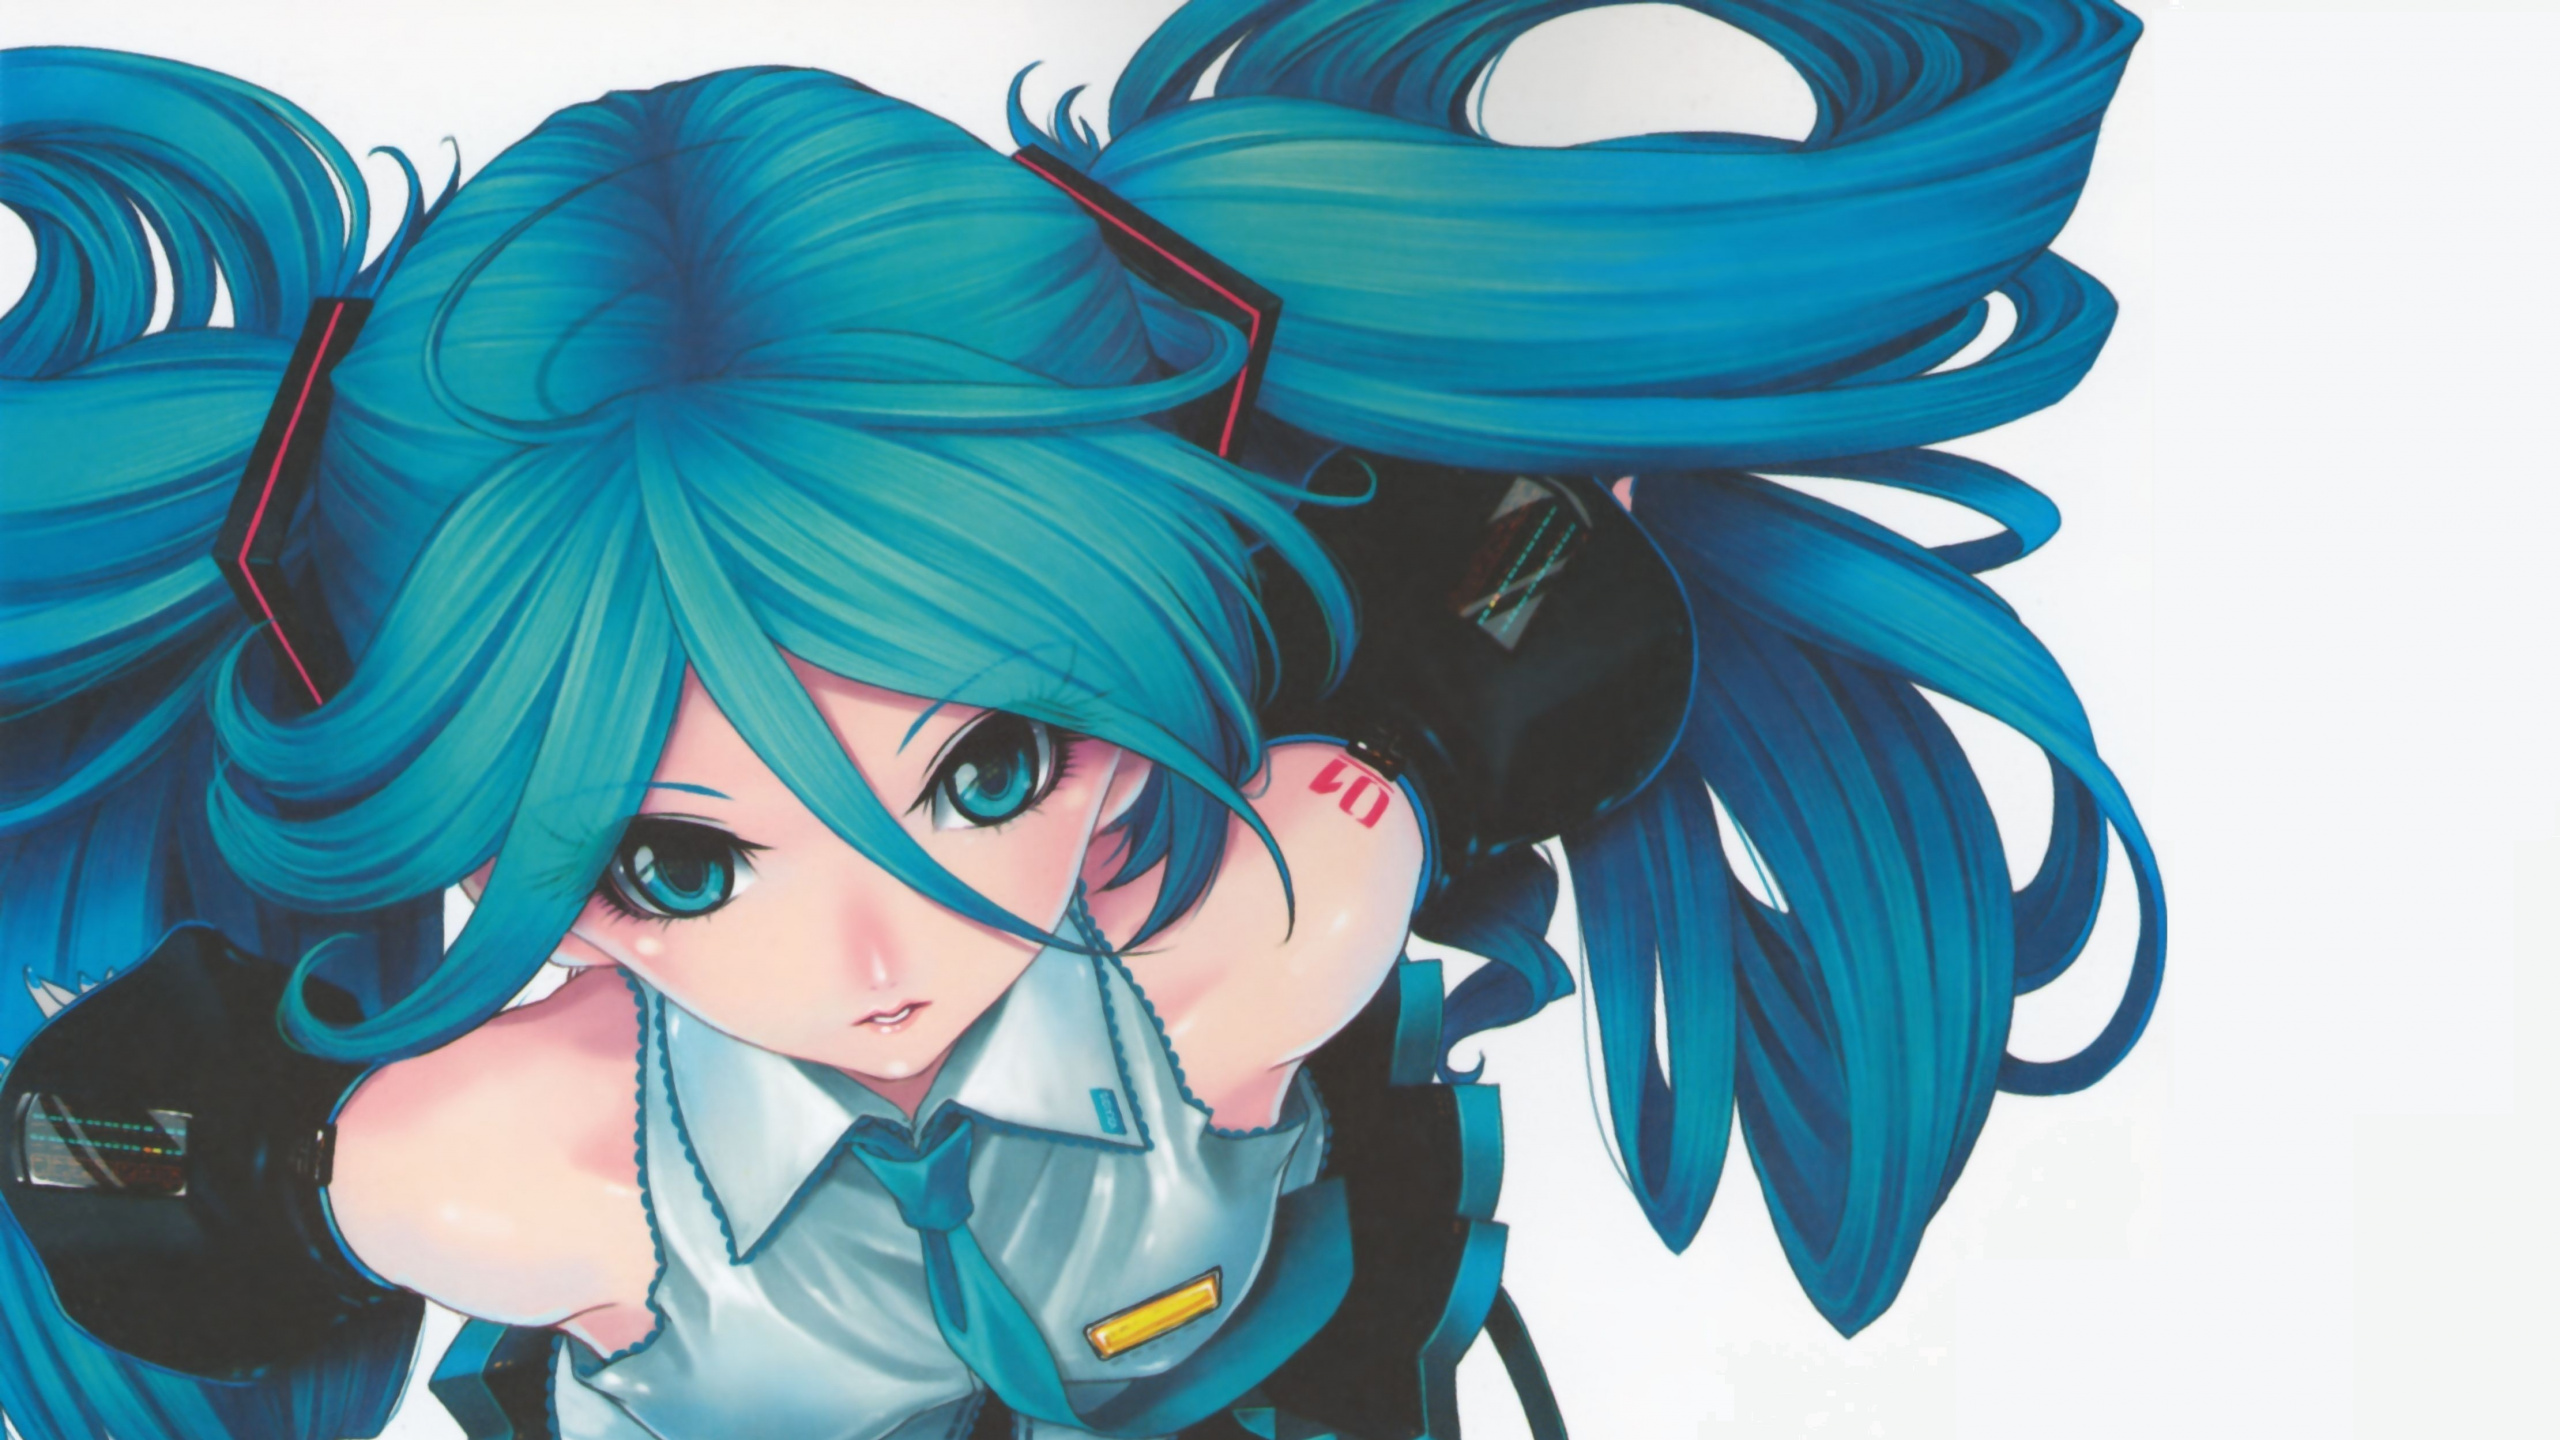 Blauhaariger Männlicher Anime-Charakter. Wallpaper in 2560x1440 Resolution